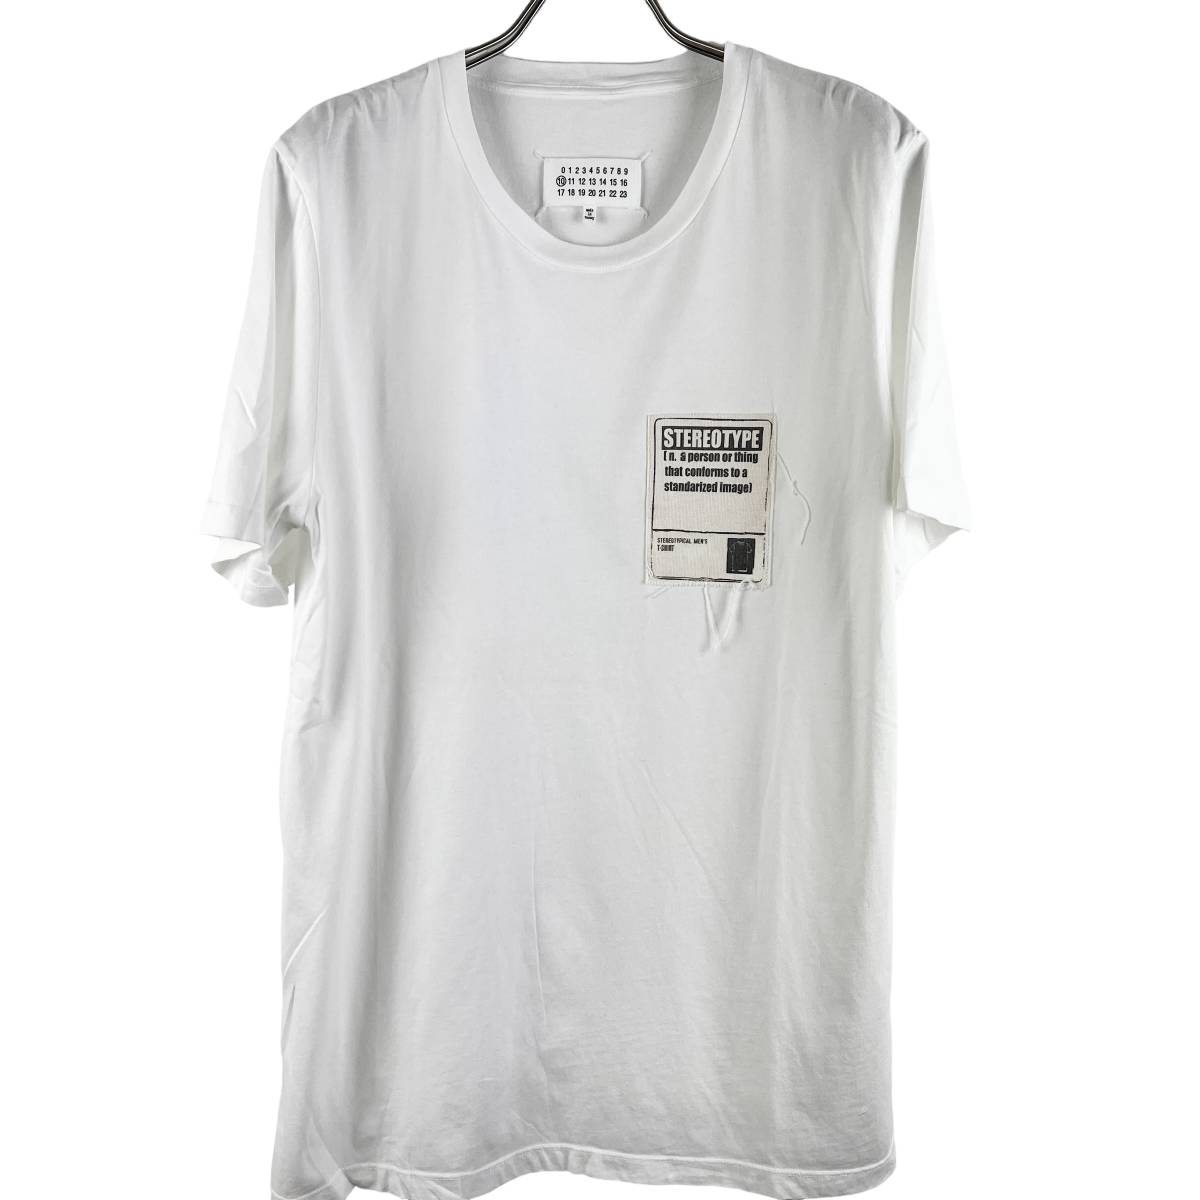 Maison Margiela (メゾン マルジェラ) Shortsleeve STEREOTYPE T Shirt (white)